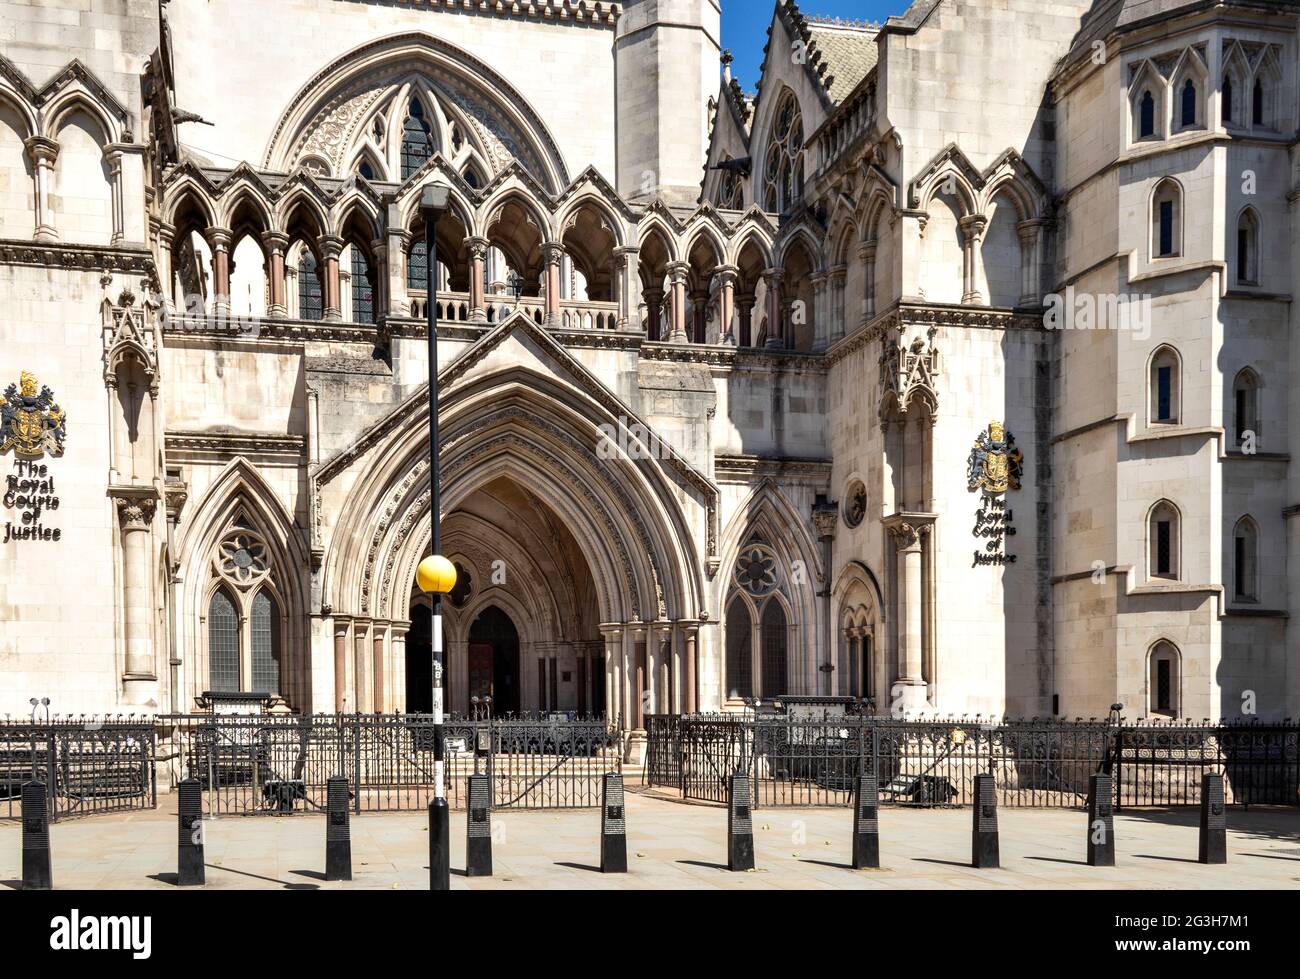 LONDRES ANGLETERRE TRIBUNAUX ROYAUX DE JUSTICE OU TRIBUNAUX L'ENTRÉE PRINCIPALE DE STRAND Banque D'Images